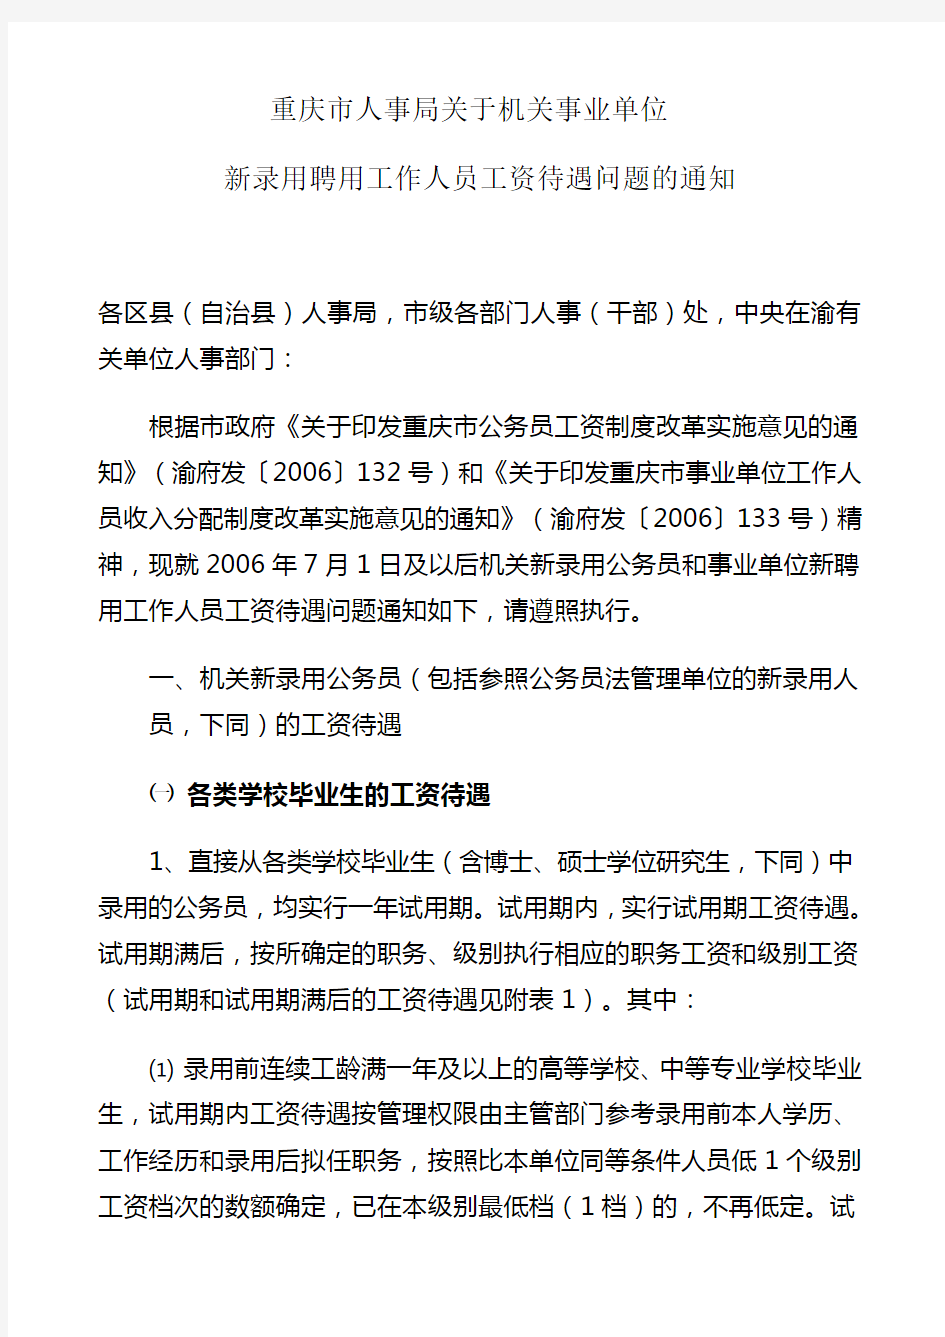 重庆市人事局关于机关事业单位新录用聘用工作人员工资待遇问题的通知